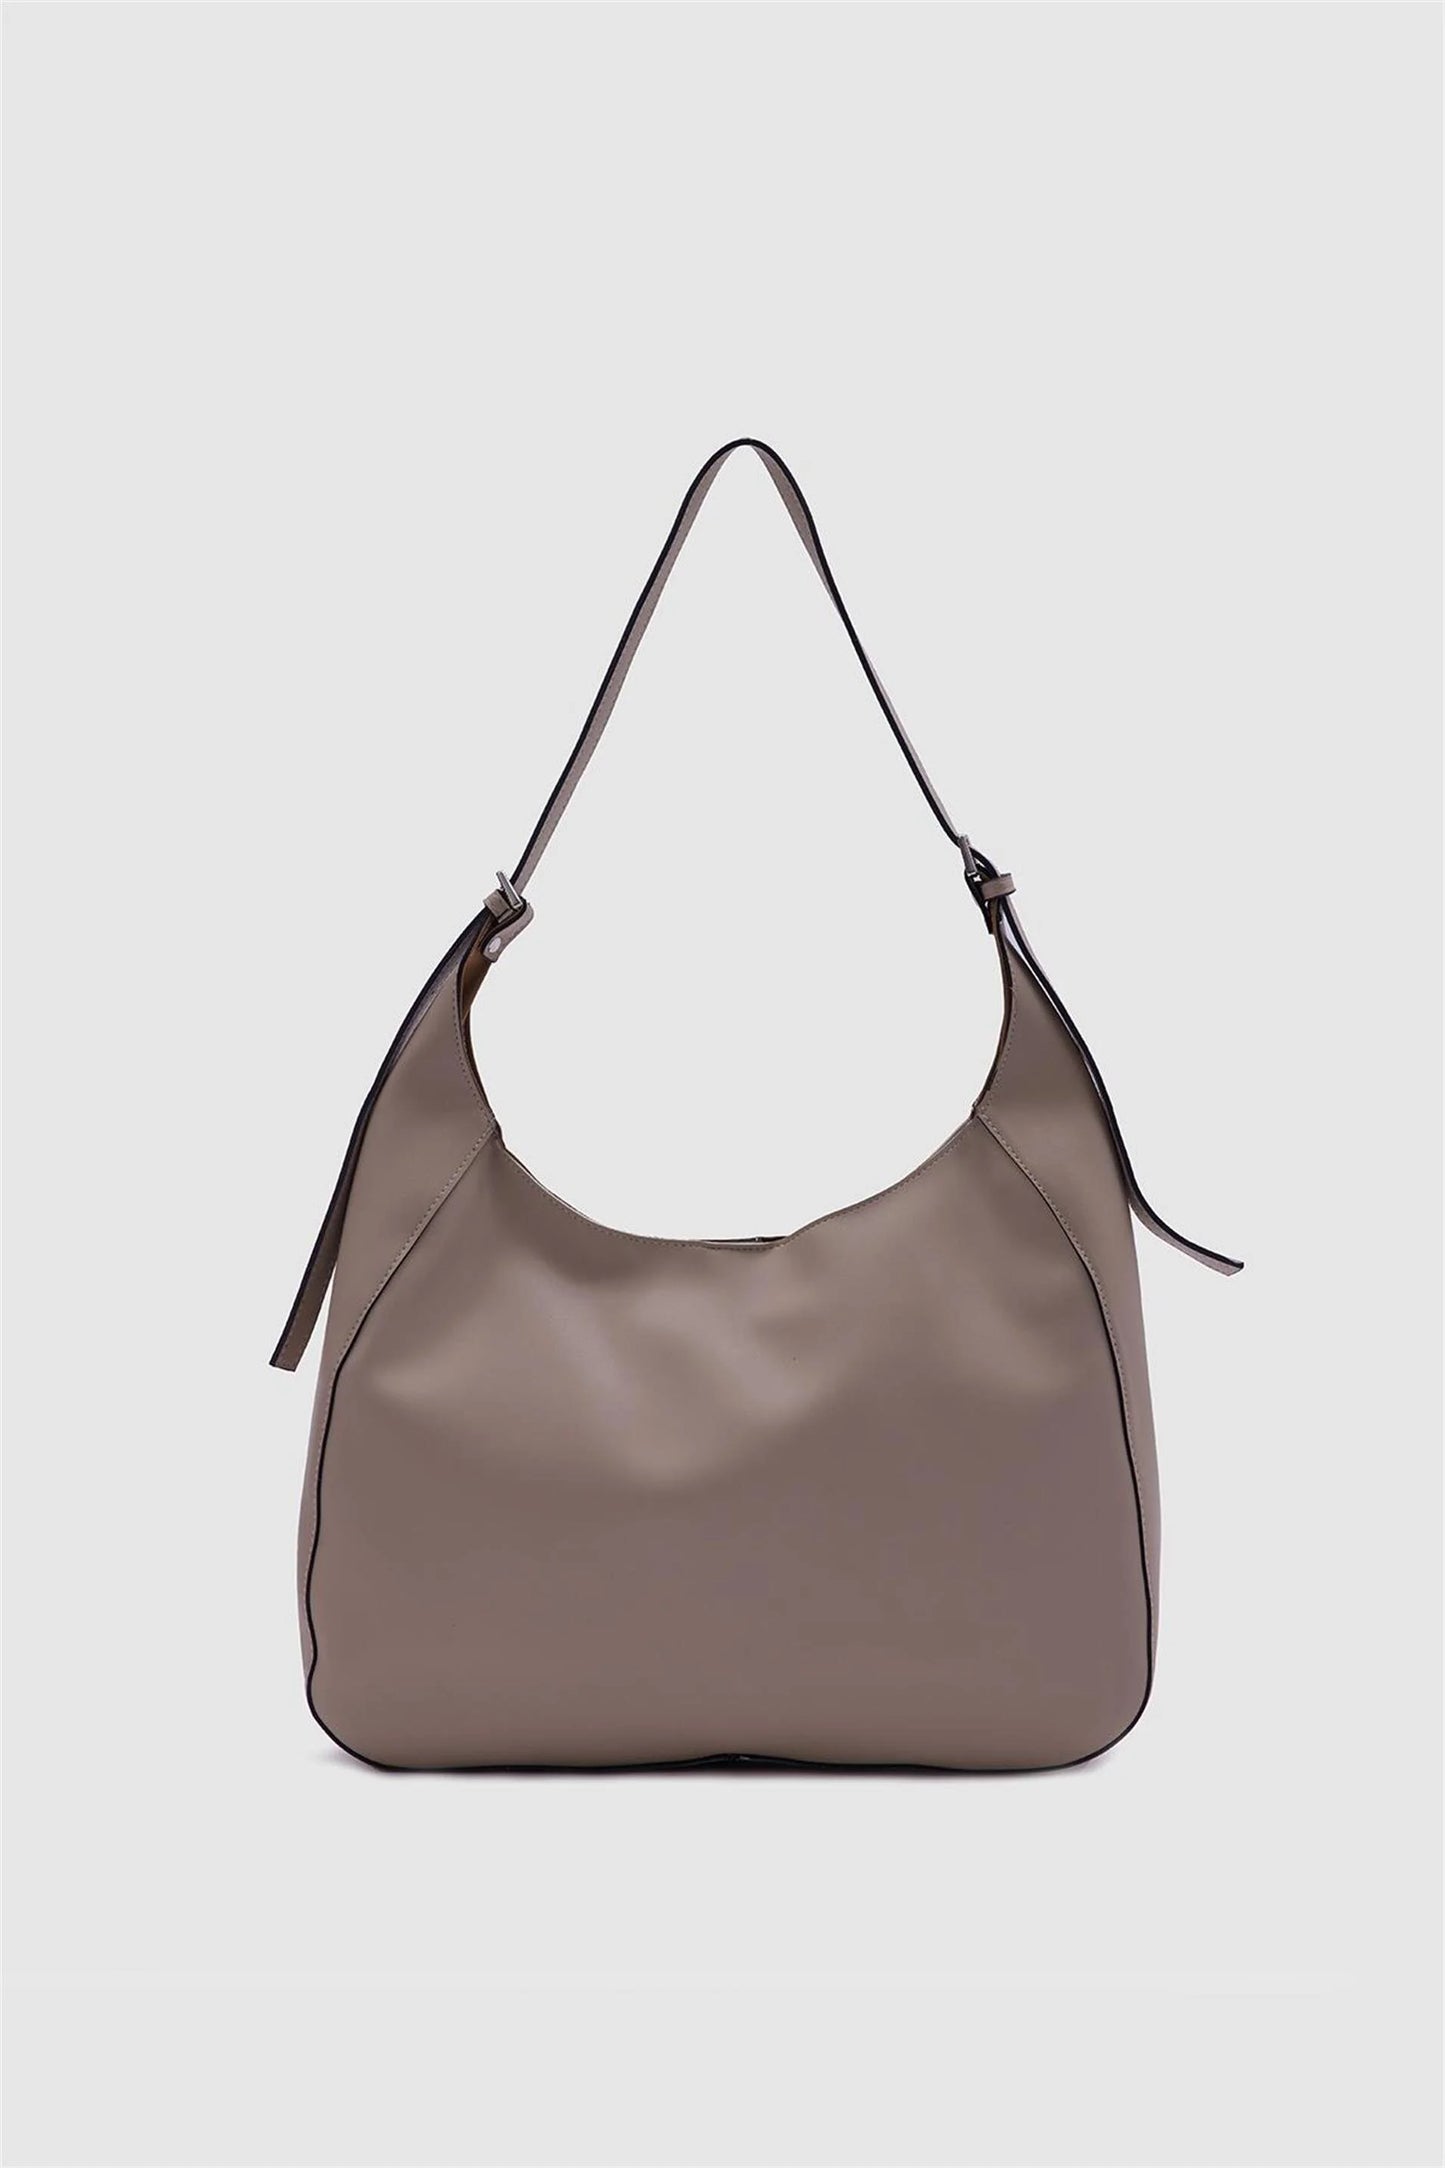 Faux Leather Mink Bigger Shoulder Bag shoulder bag LUNARITY GARAGE Beige  